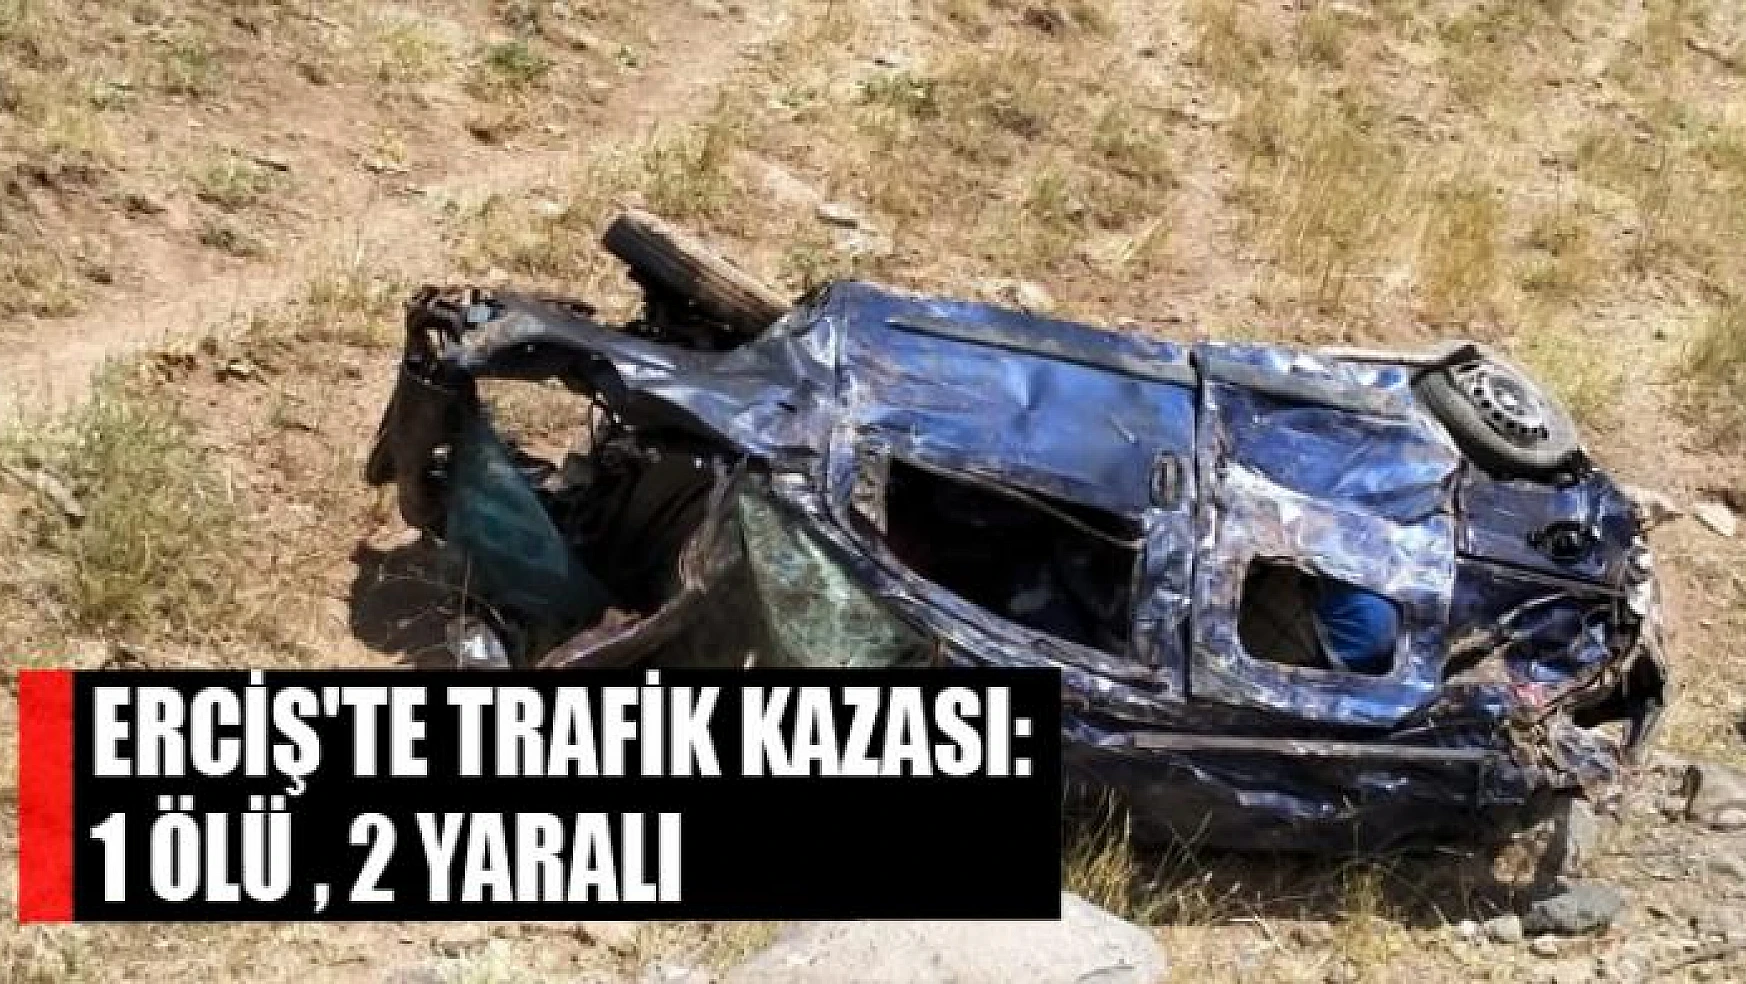 Erciş'te trafik kazası:1 ölü , 2 yaralı